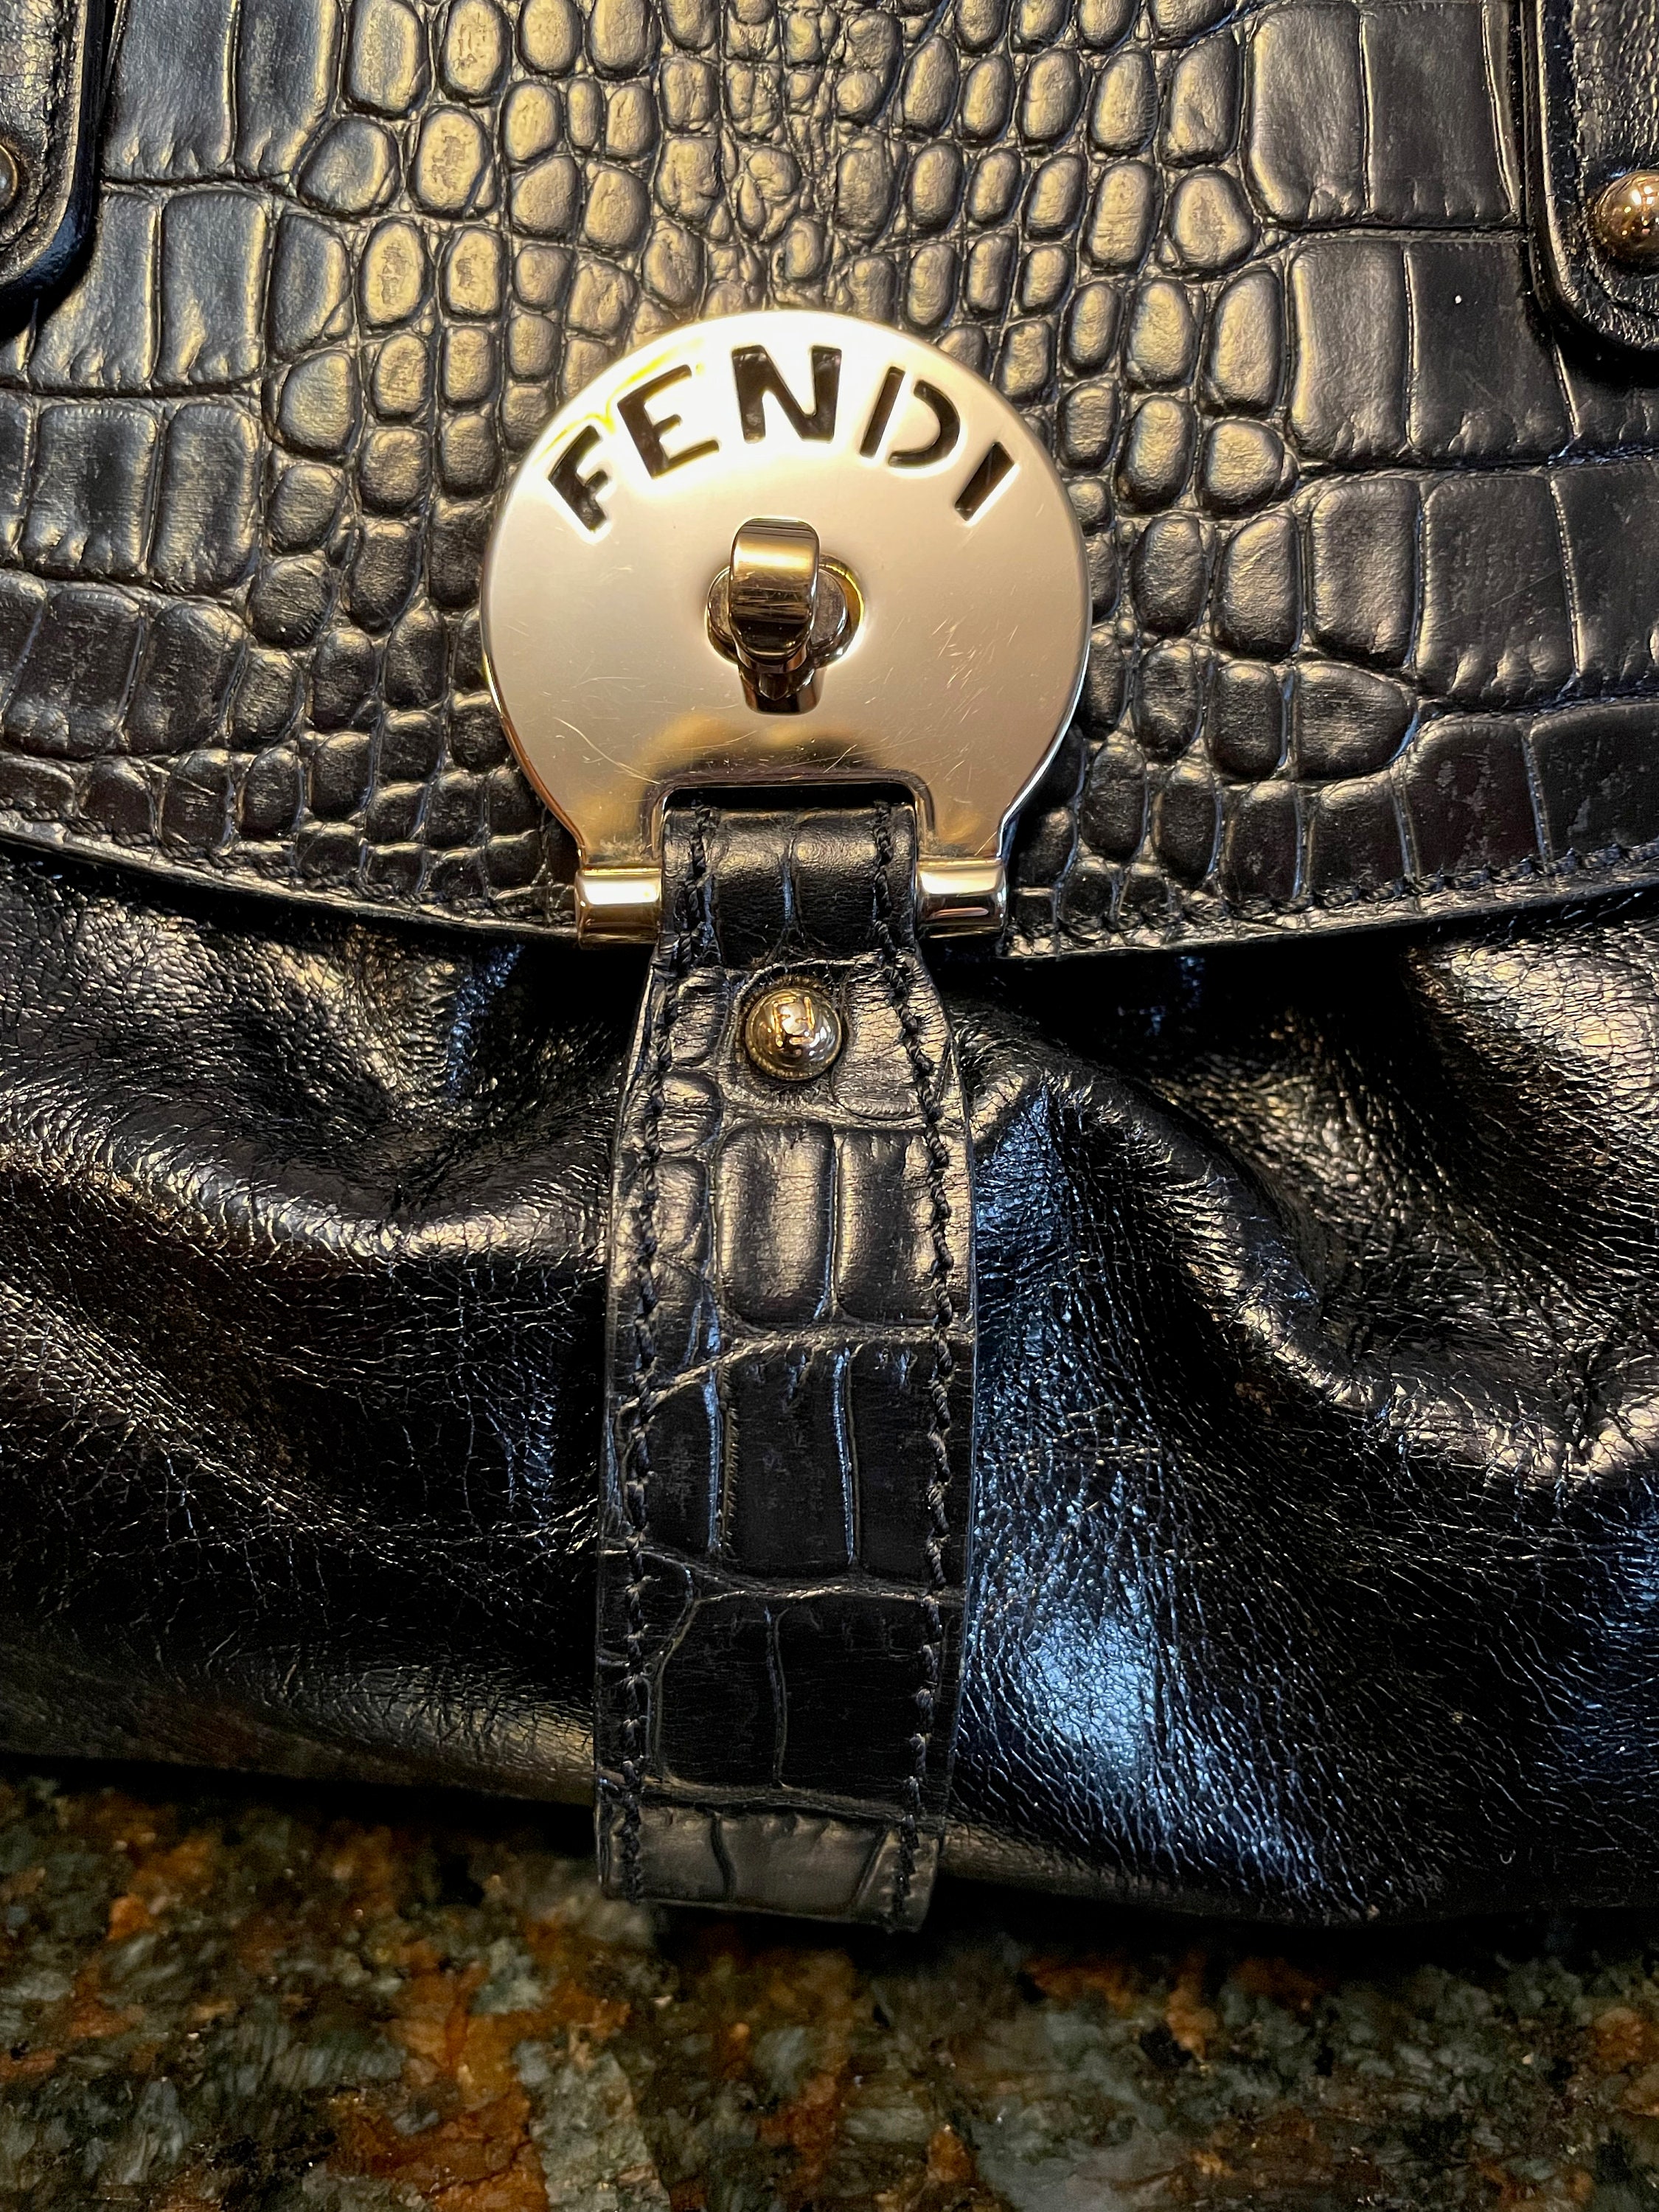 Vintage Fendi Black Leather Magic Bag 